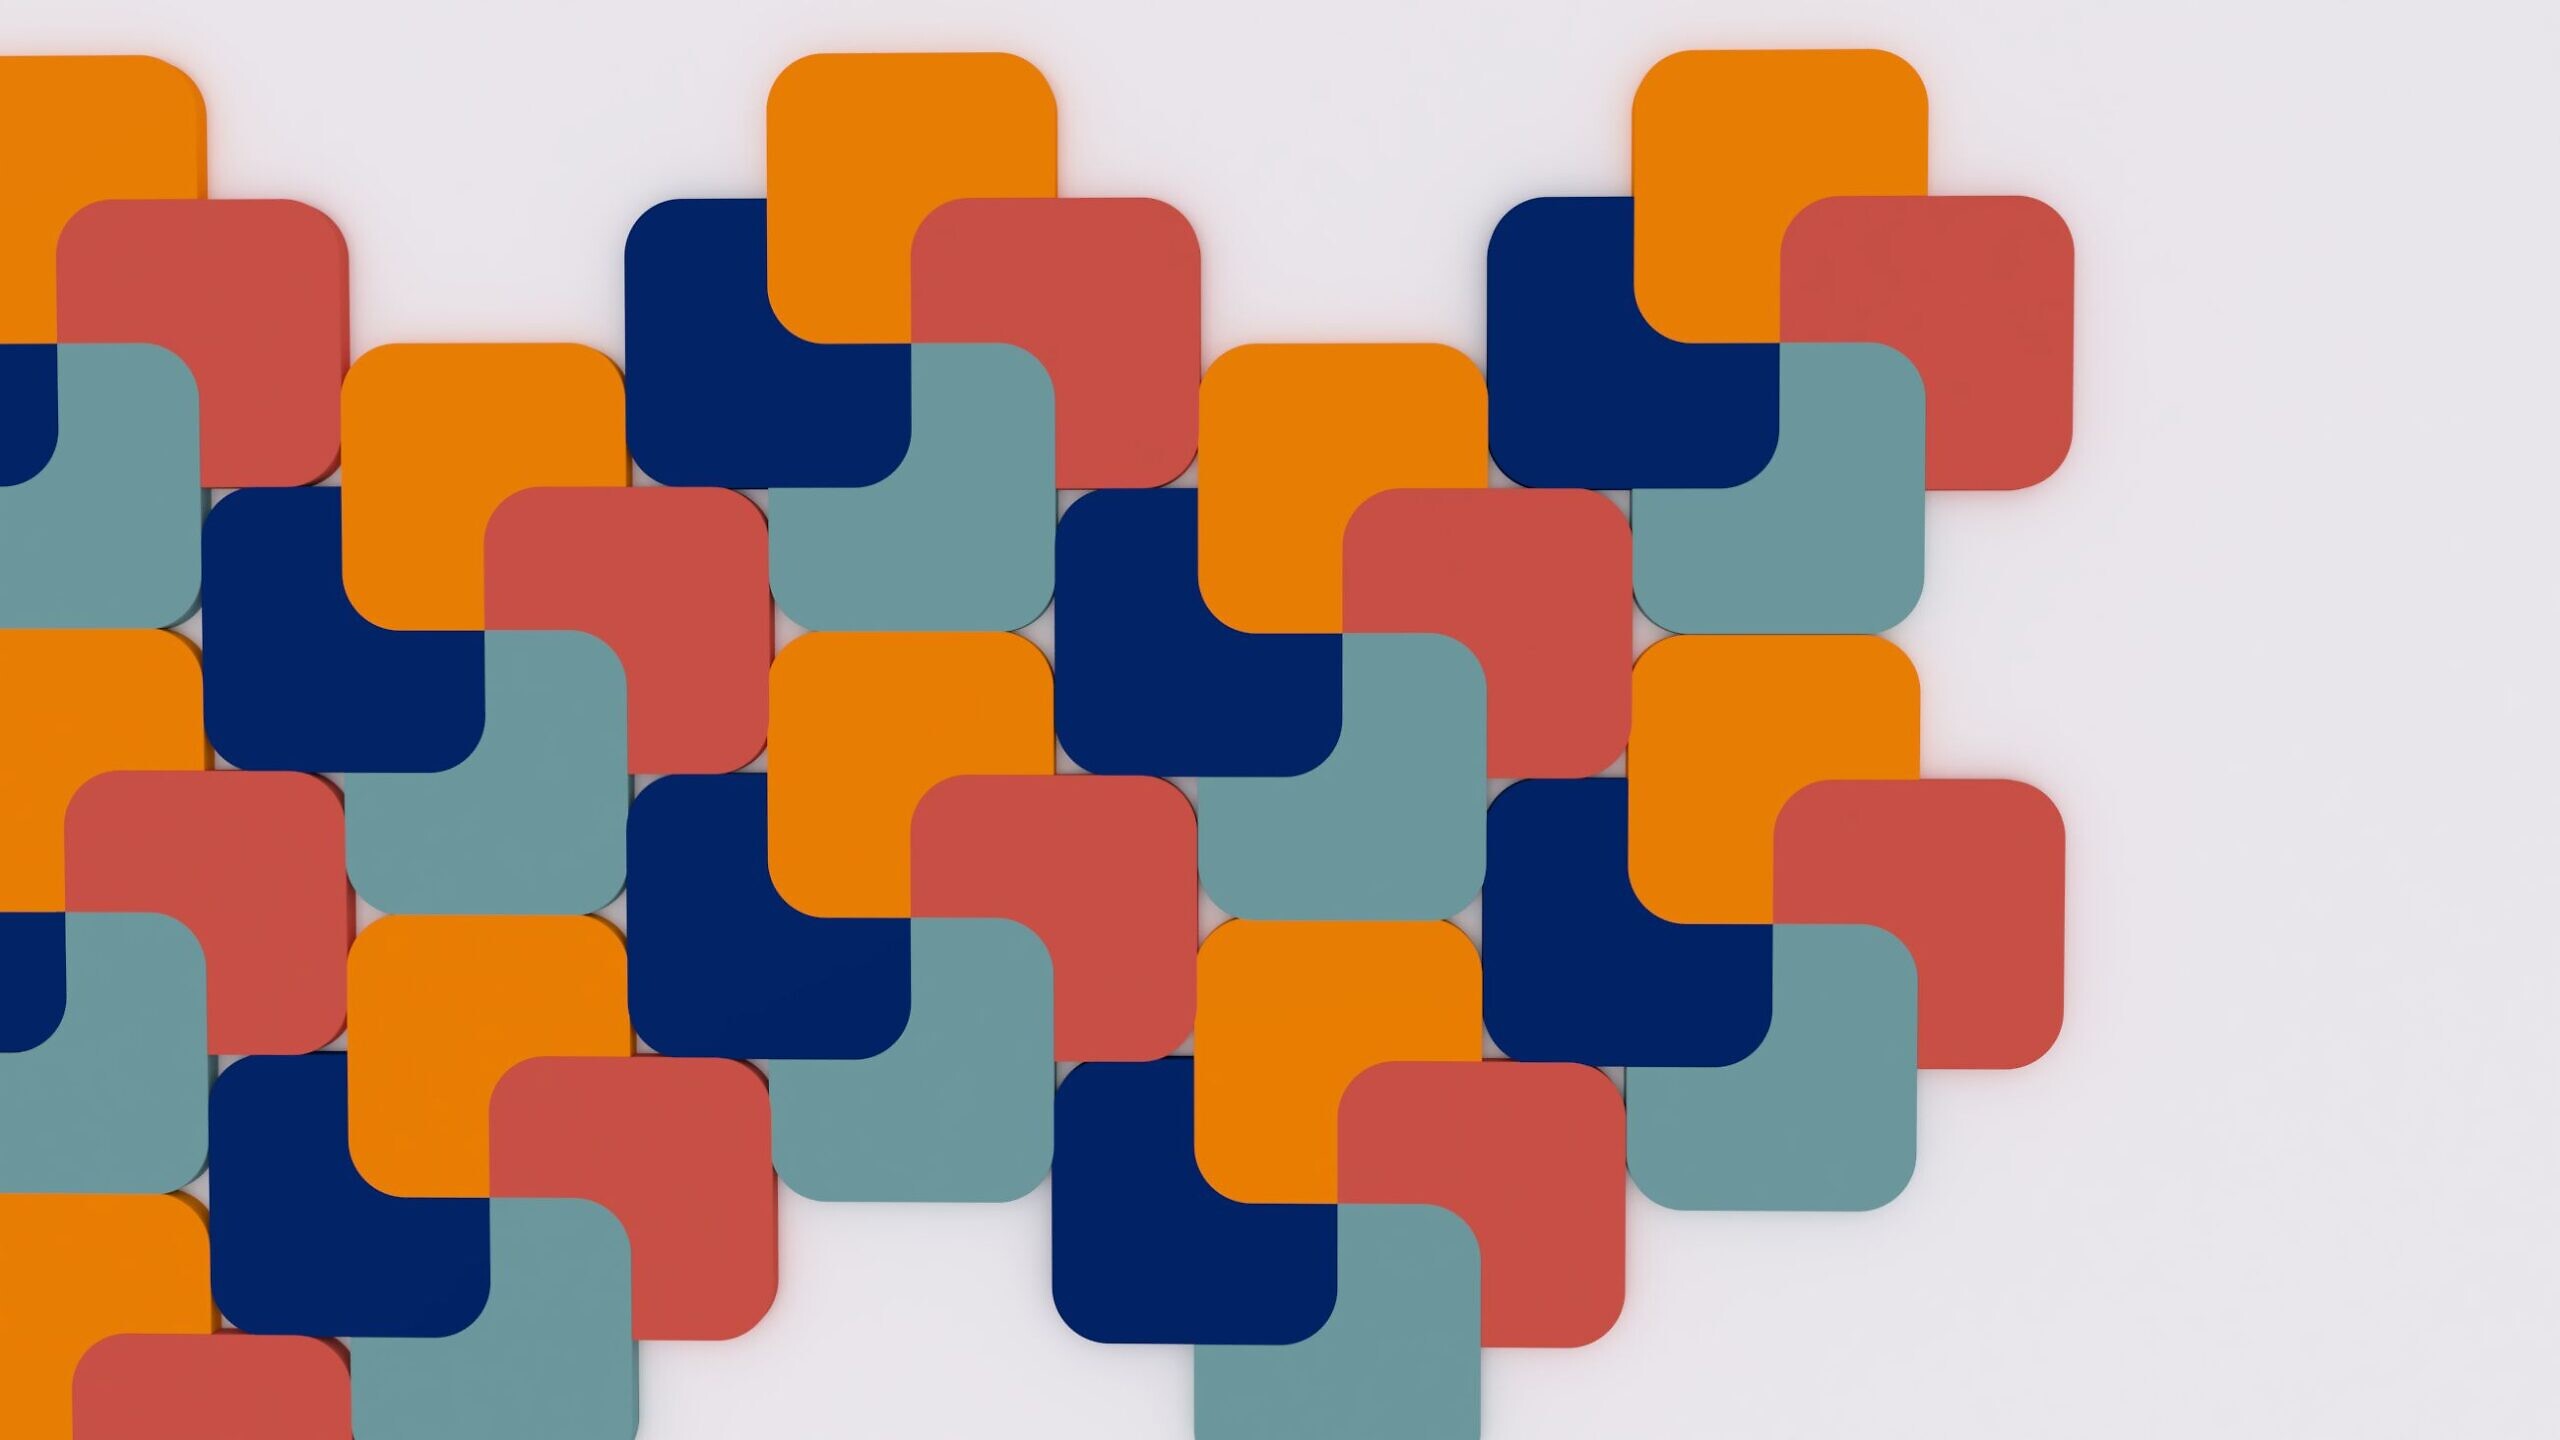 Panel akustyczny marki Fluffo o wzorze M Cut, w kolorach: pomarańczowym, niebieskim, czerwonym i miętowym.